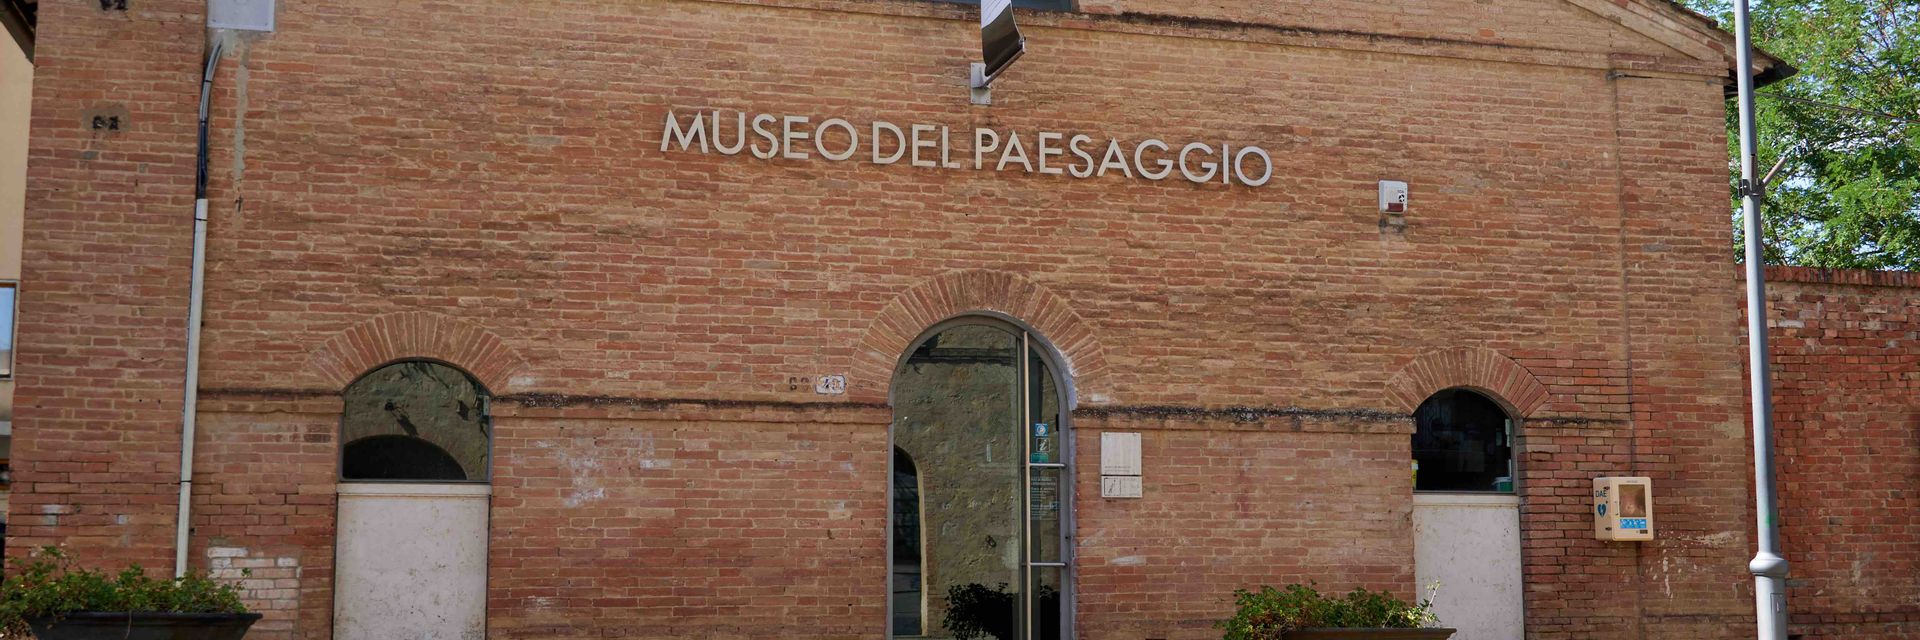 Landscape Museum